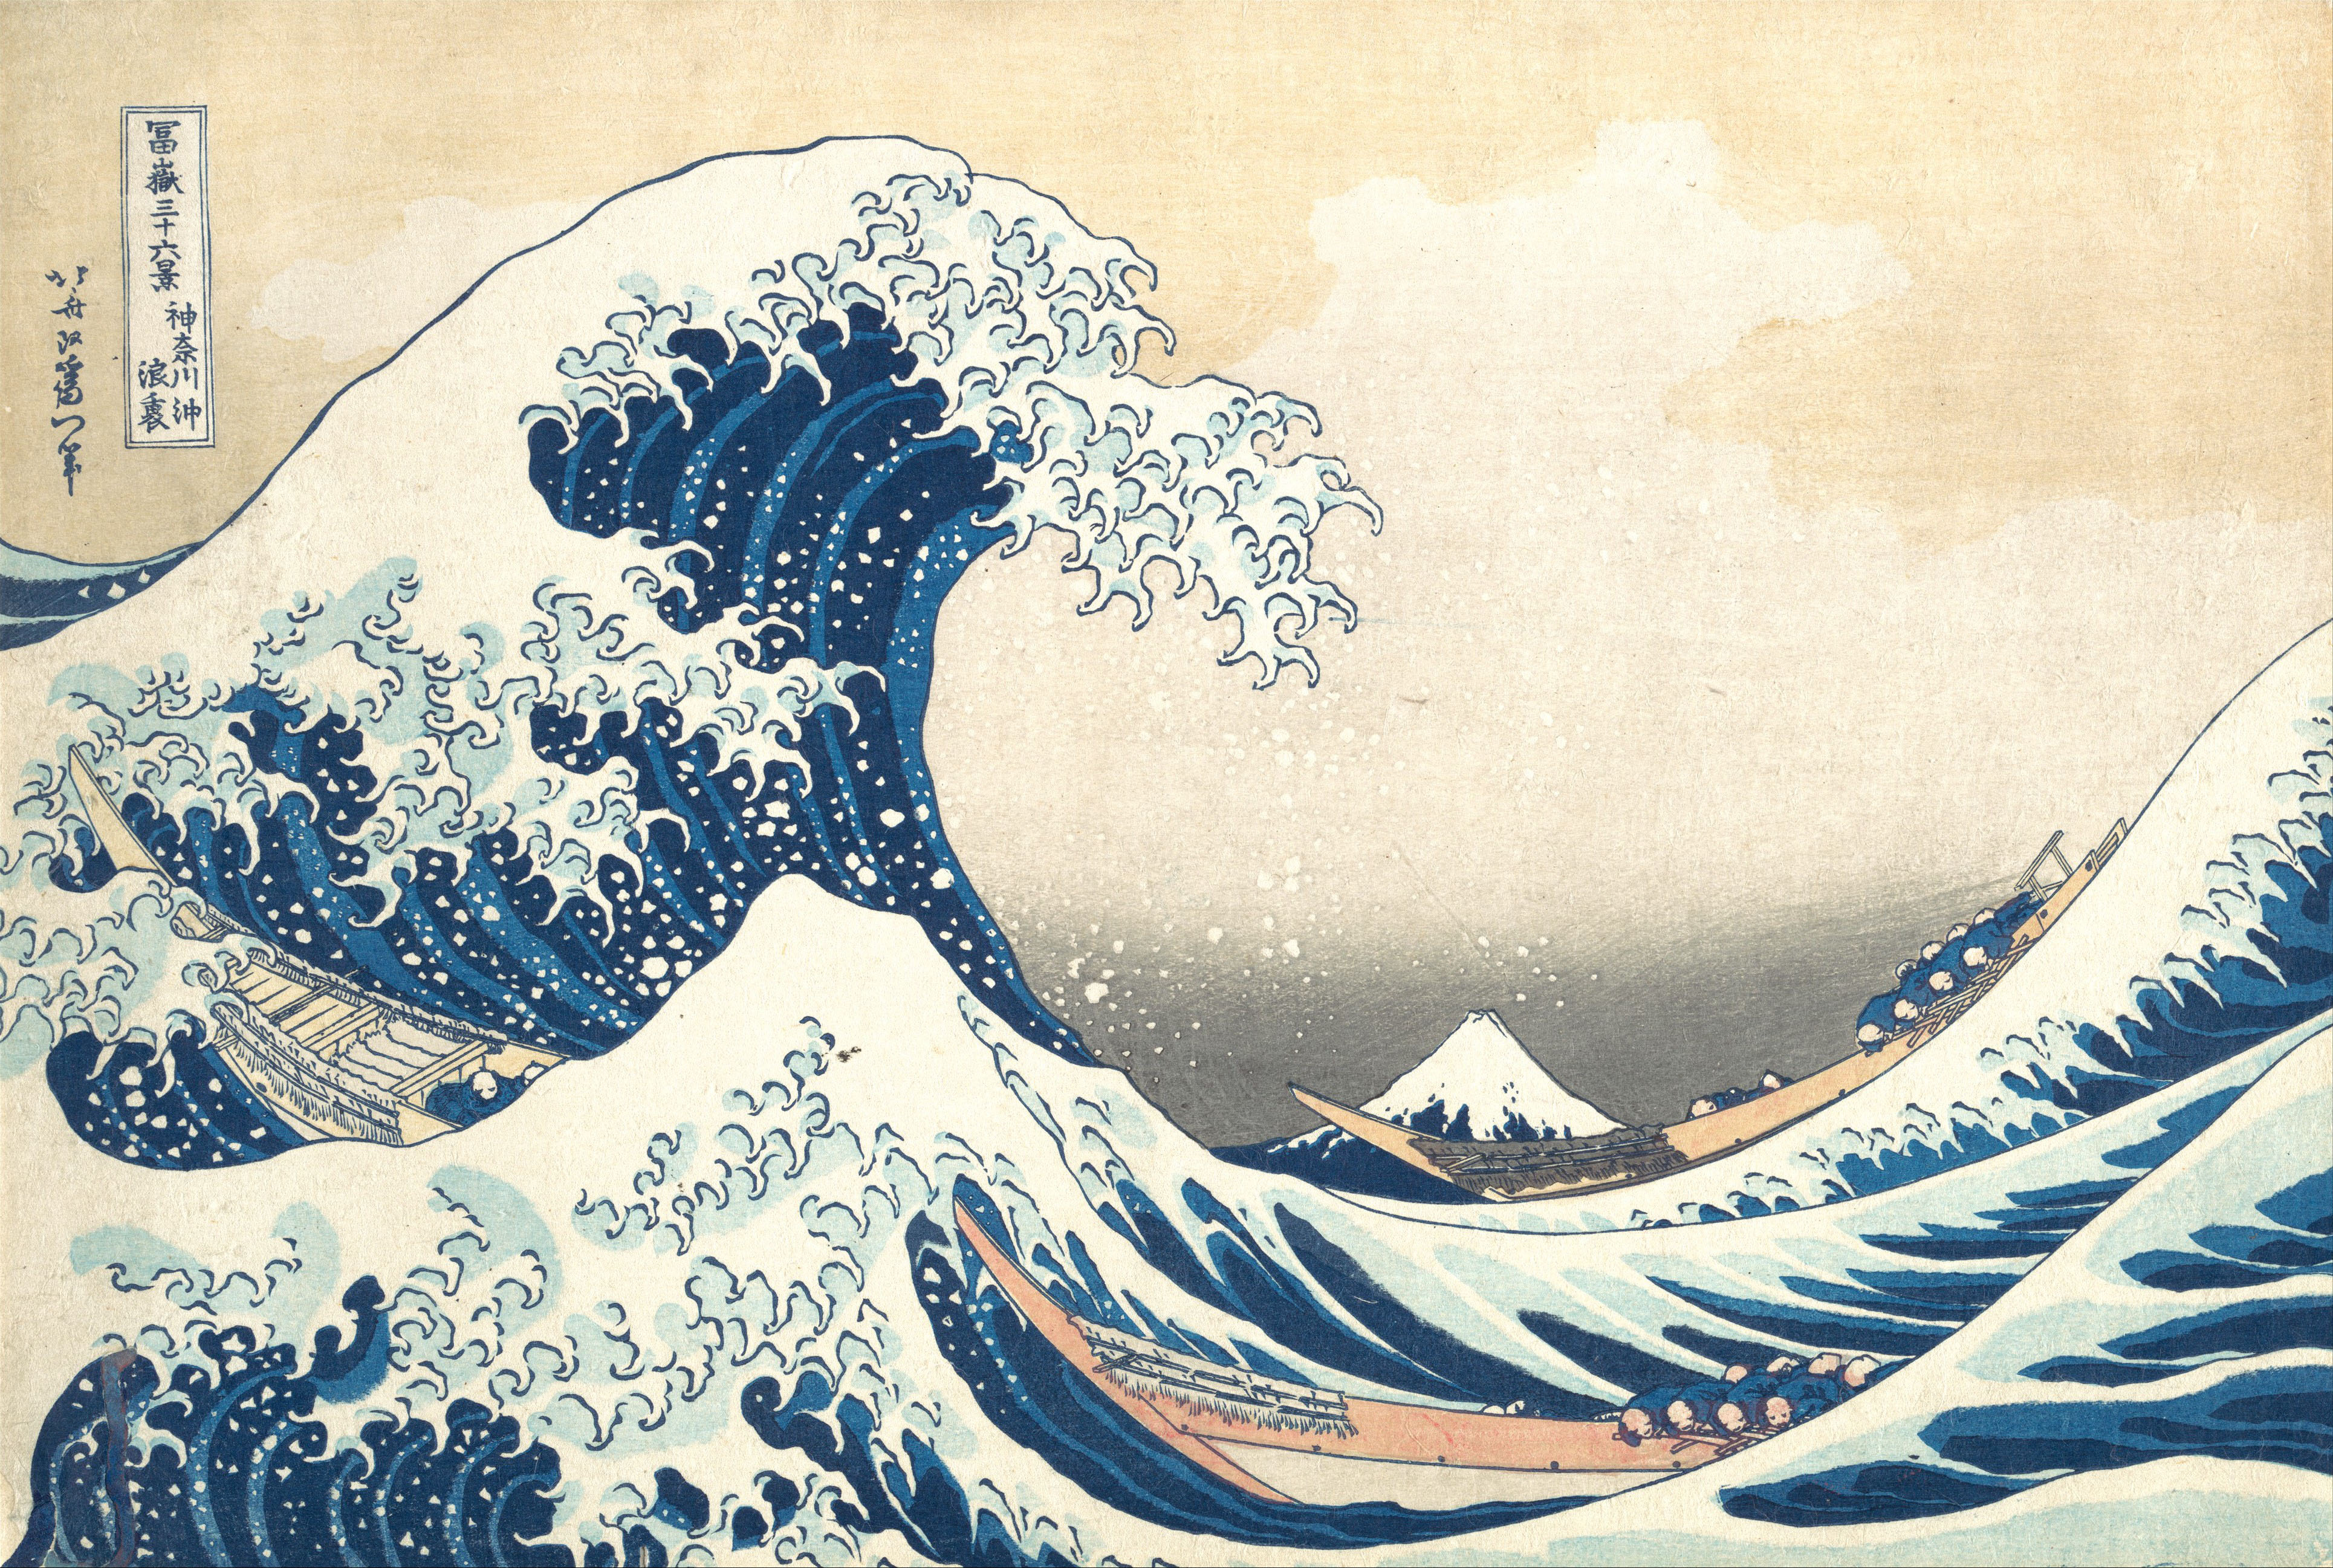 L'onda by Katsushika Hokusai - c. 1830 - - collezione privata